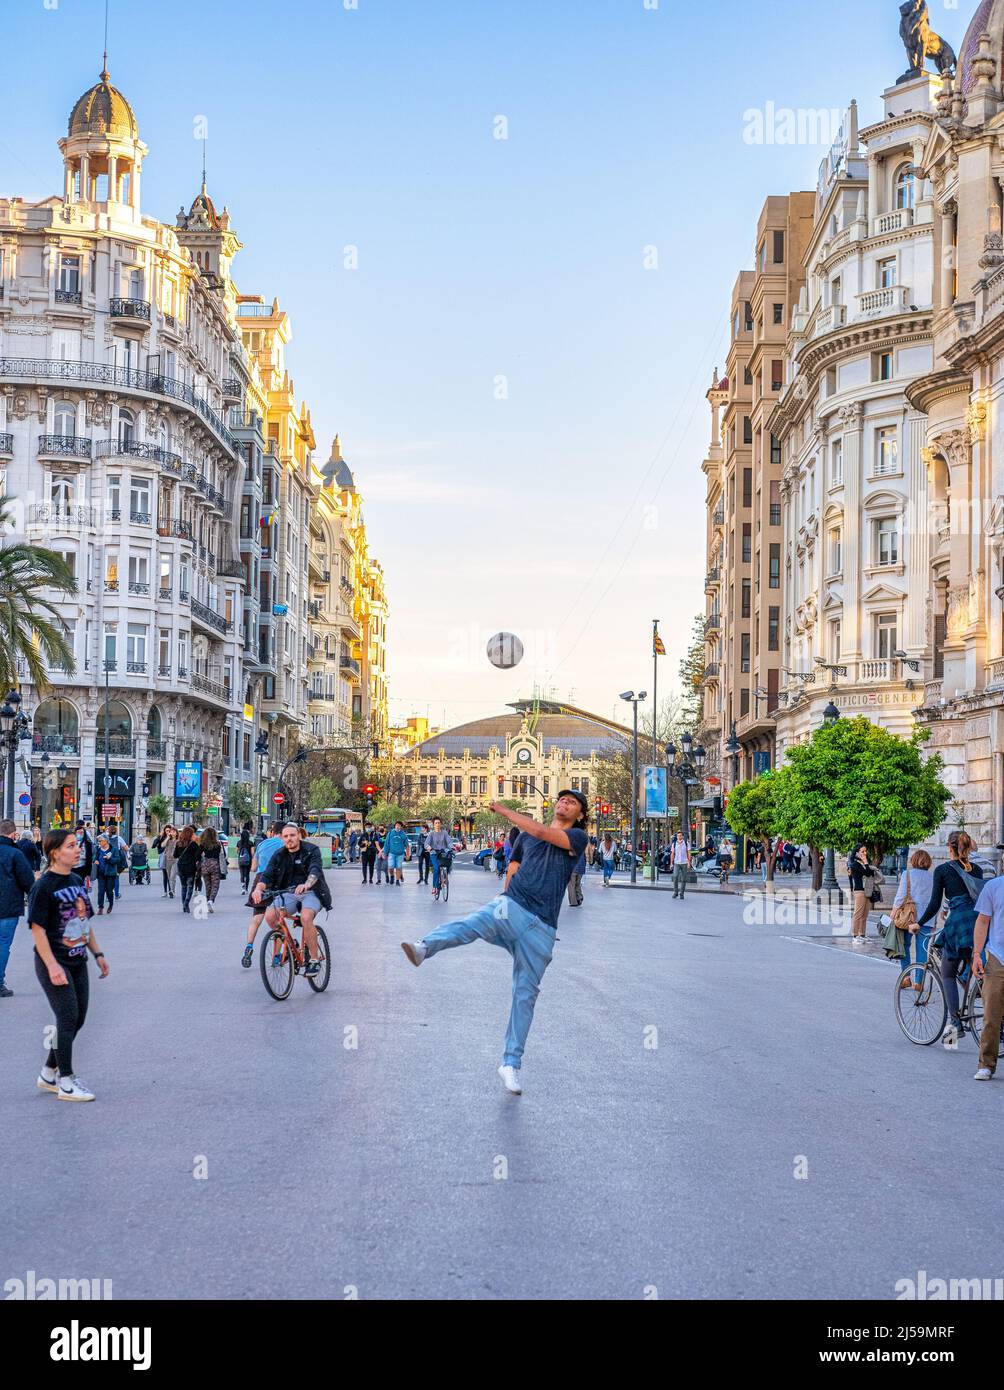 Junge Menschen spielen mit einem Fußball auf der Plaza del Ayuntamiento oder dem Rathaus. Der Stadtplatz ist von majestätischen Bui im Kolonialstil umgeben Stockfoto